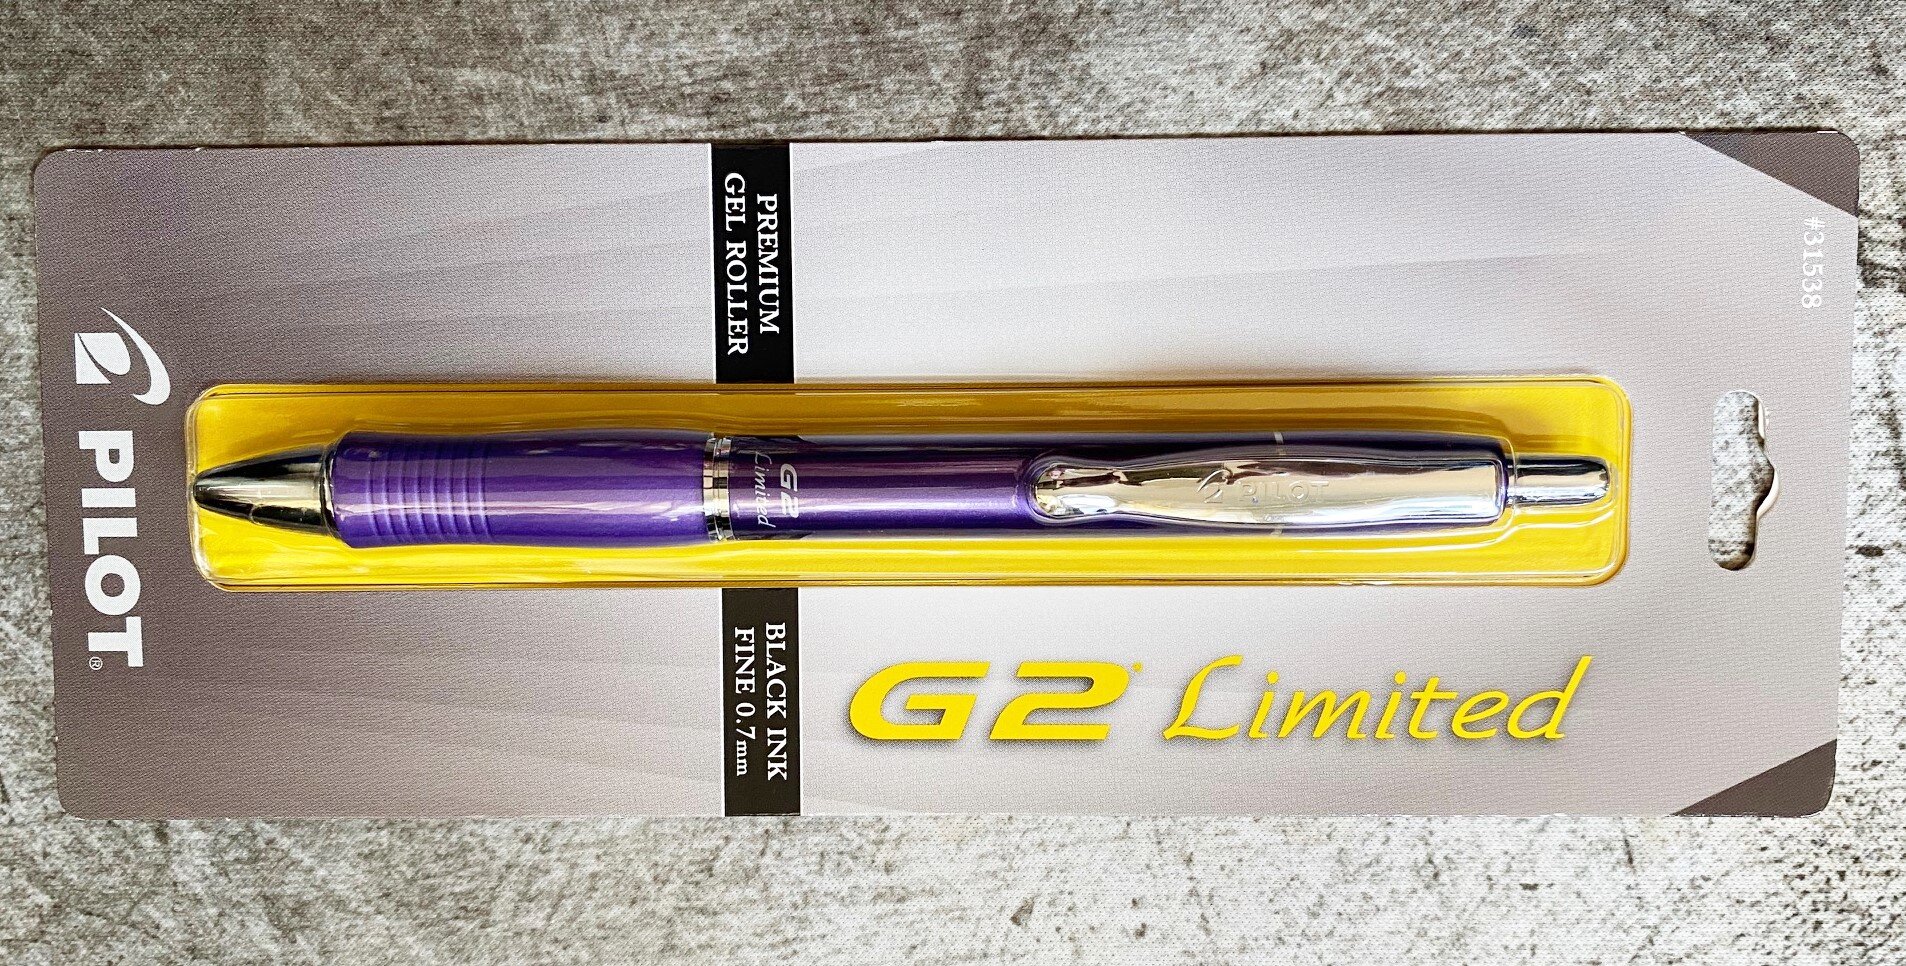 Pilot G2 Gel Pen - .5 mm, Red, Extra Fine